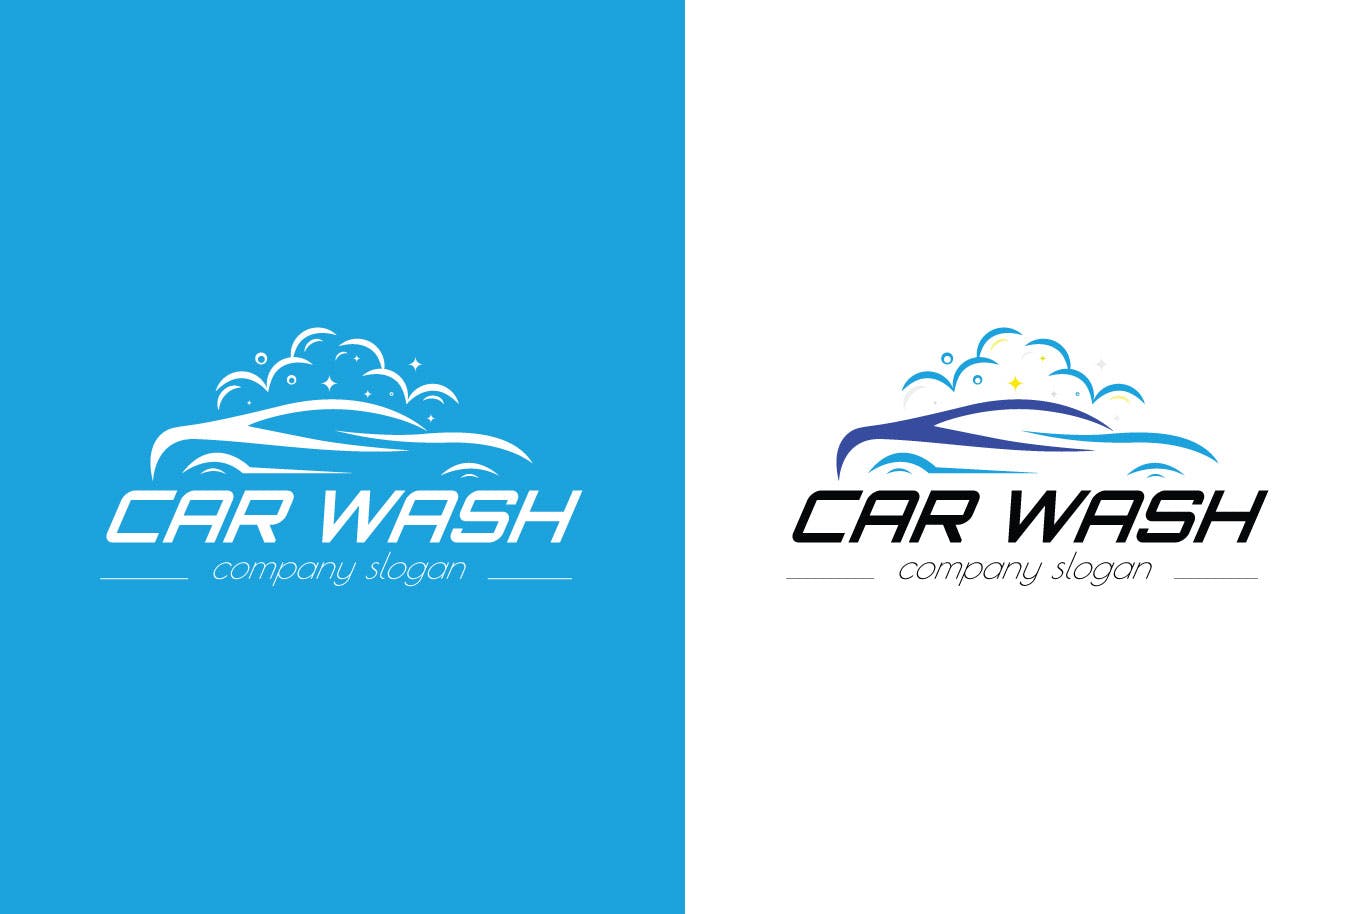 洗车店品牌Logo设计第一素材精选模板 Car Wash Business Logo Template插图(1)